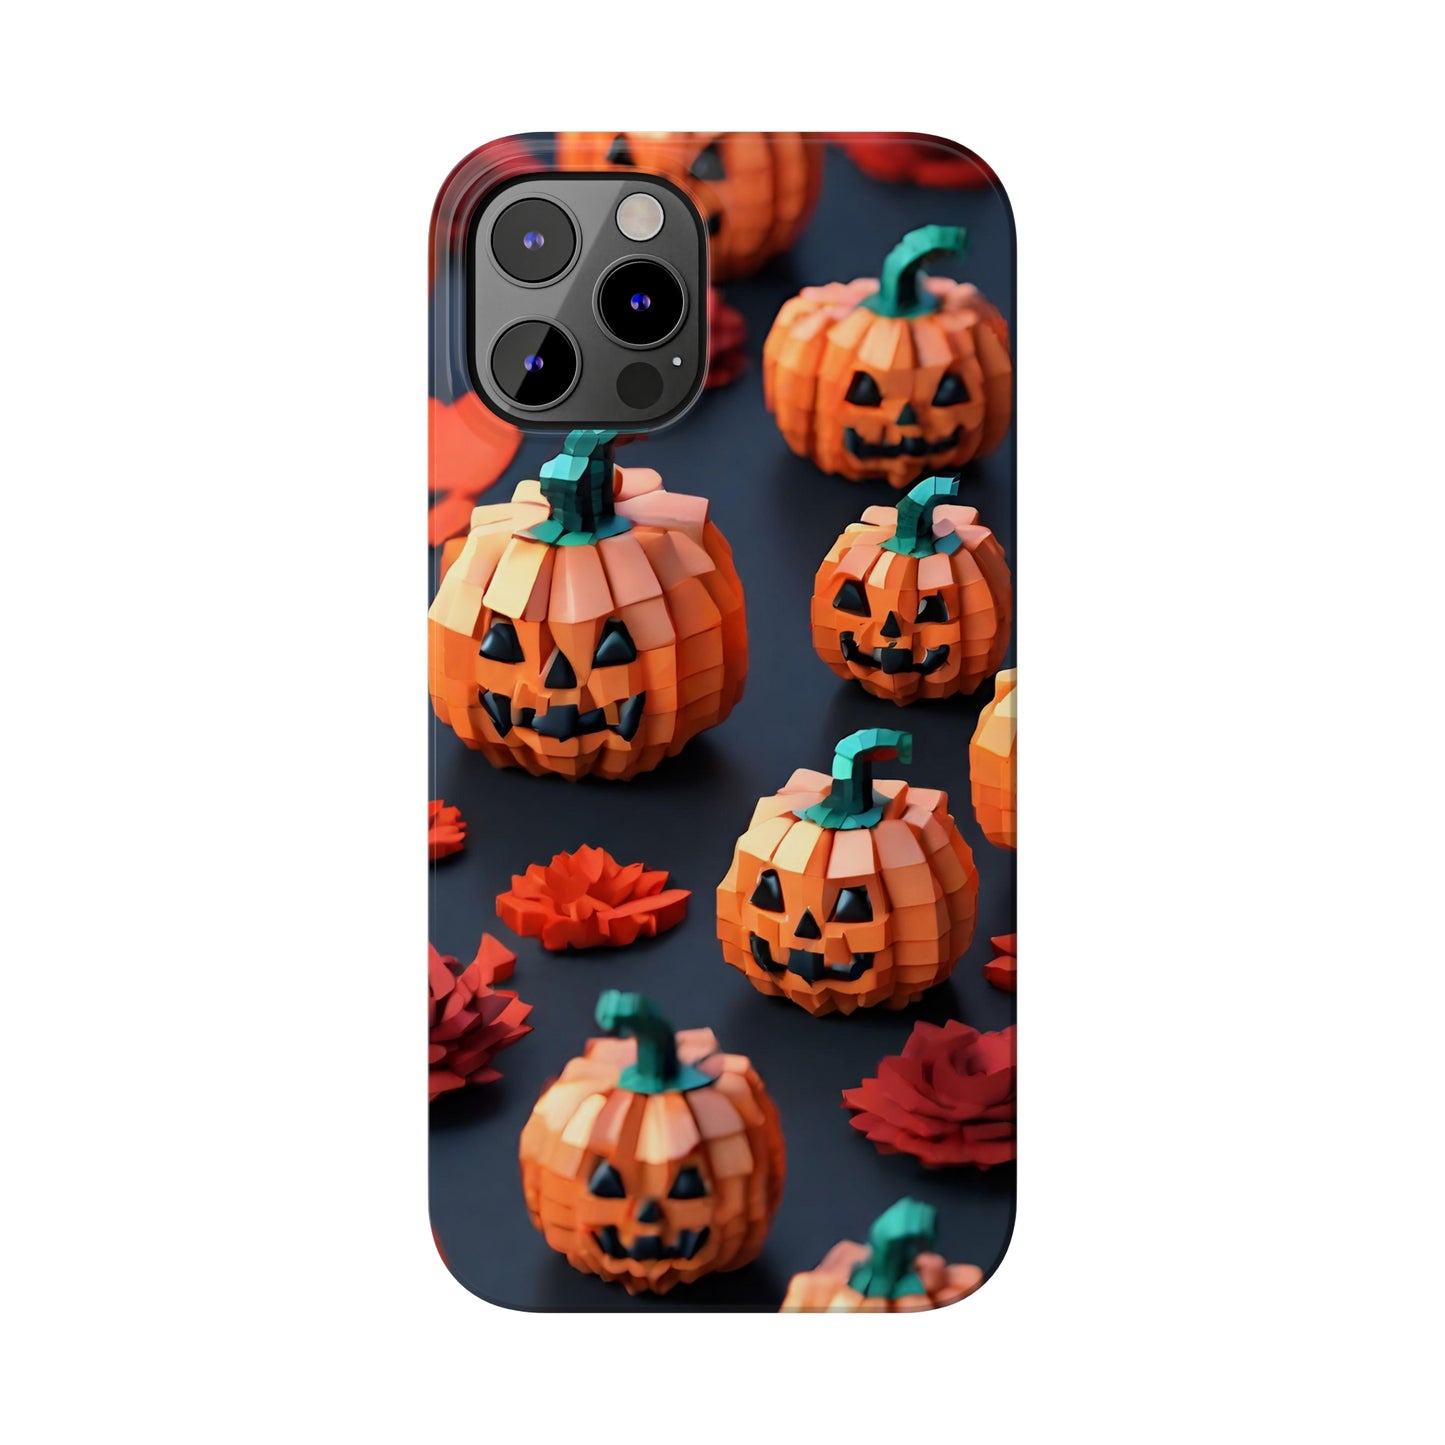 Pixel Pumpkins halloween Slim Phone Cases, Halloween Phone Case, Gamer Phone case, Pixel Art